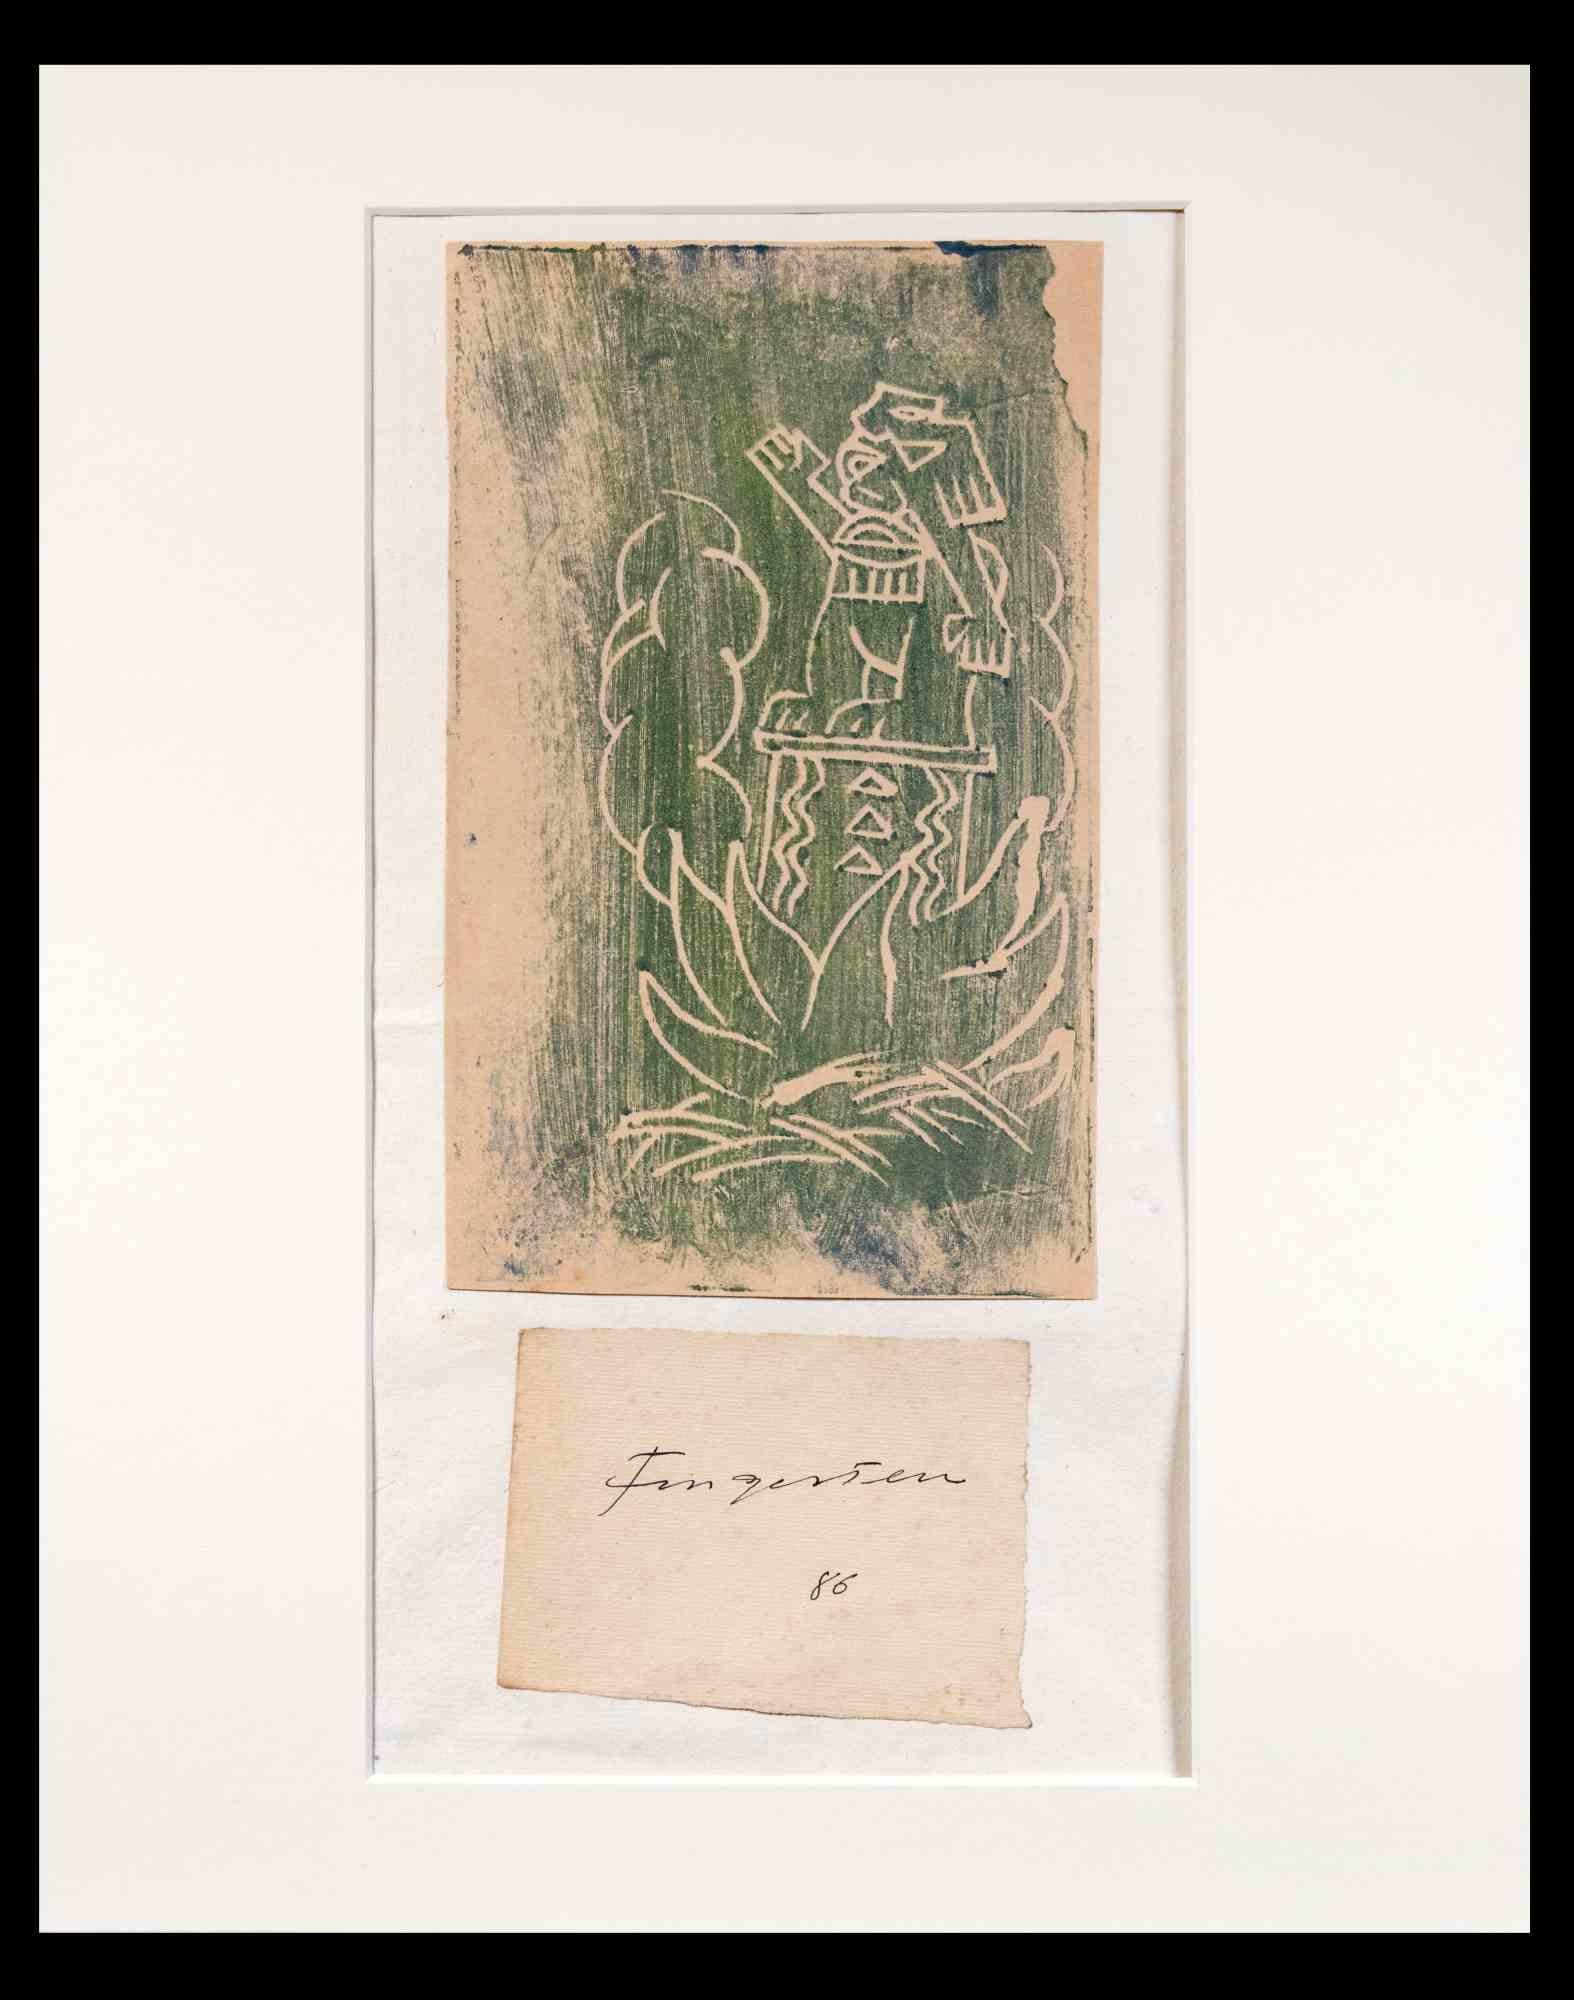 Homme en pot  est une gravure sur bois réalisée par Michel Fingesten dans les années 1930. 

Au-dessus de la gravure sur bois représentant un homme avec une main levée et du feu ; au-dessous, une carte avec la signature du graveur et le numéro 86.